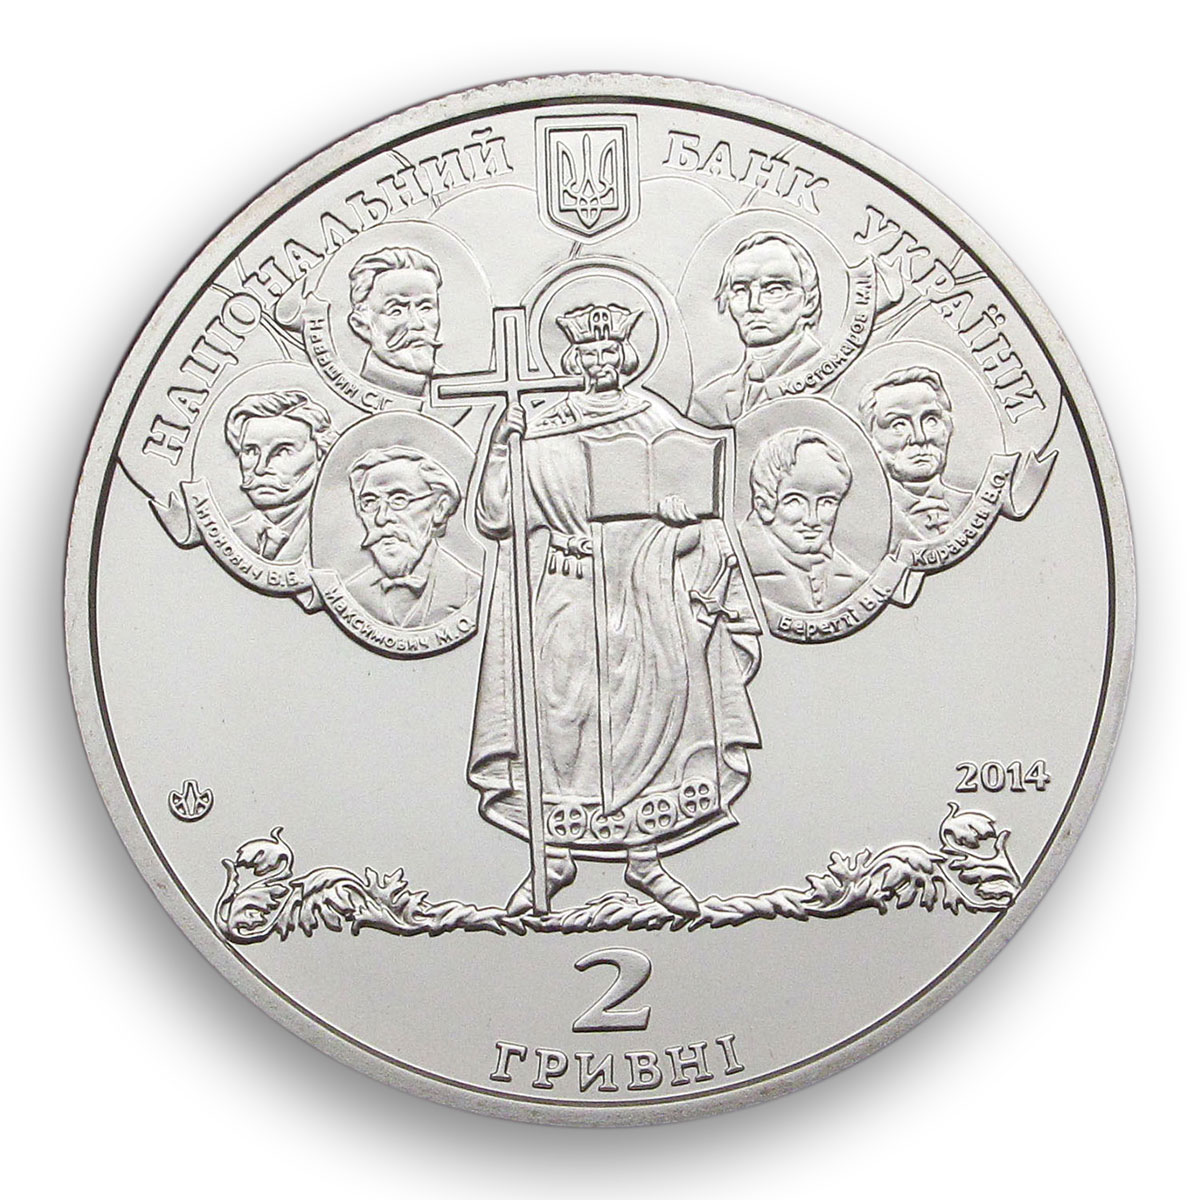 Ukraine 2 hryvnia 180 years Shevchenko National University Kyiv nickel coin 2014